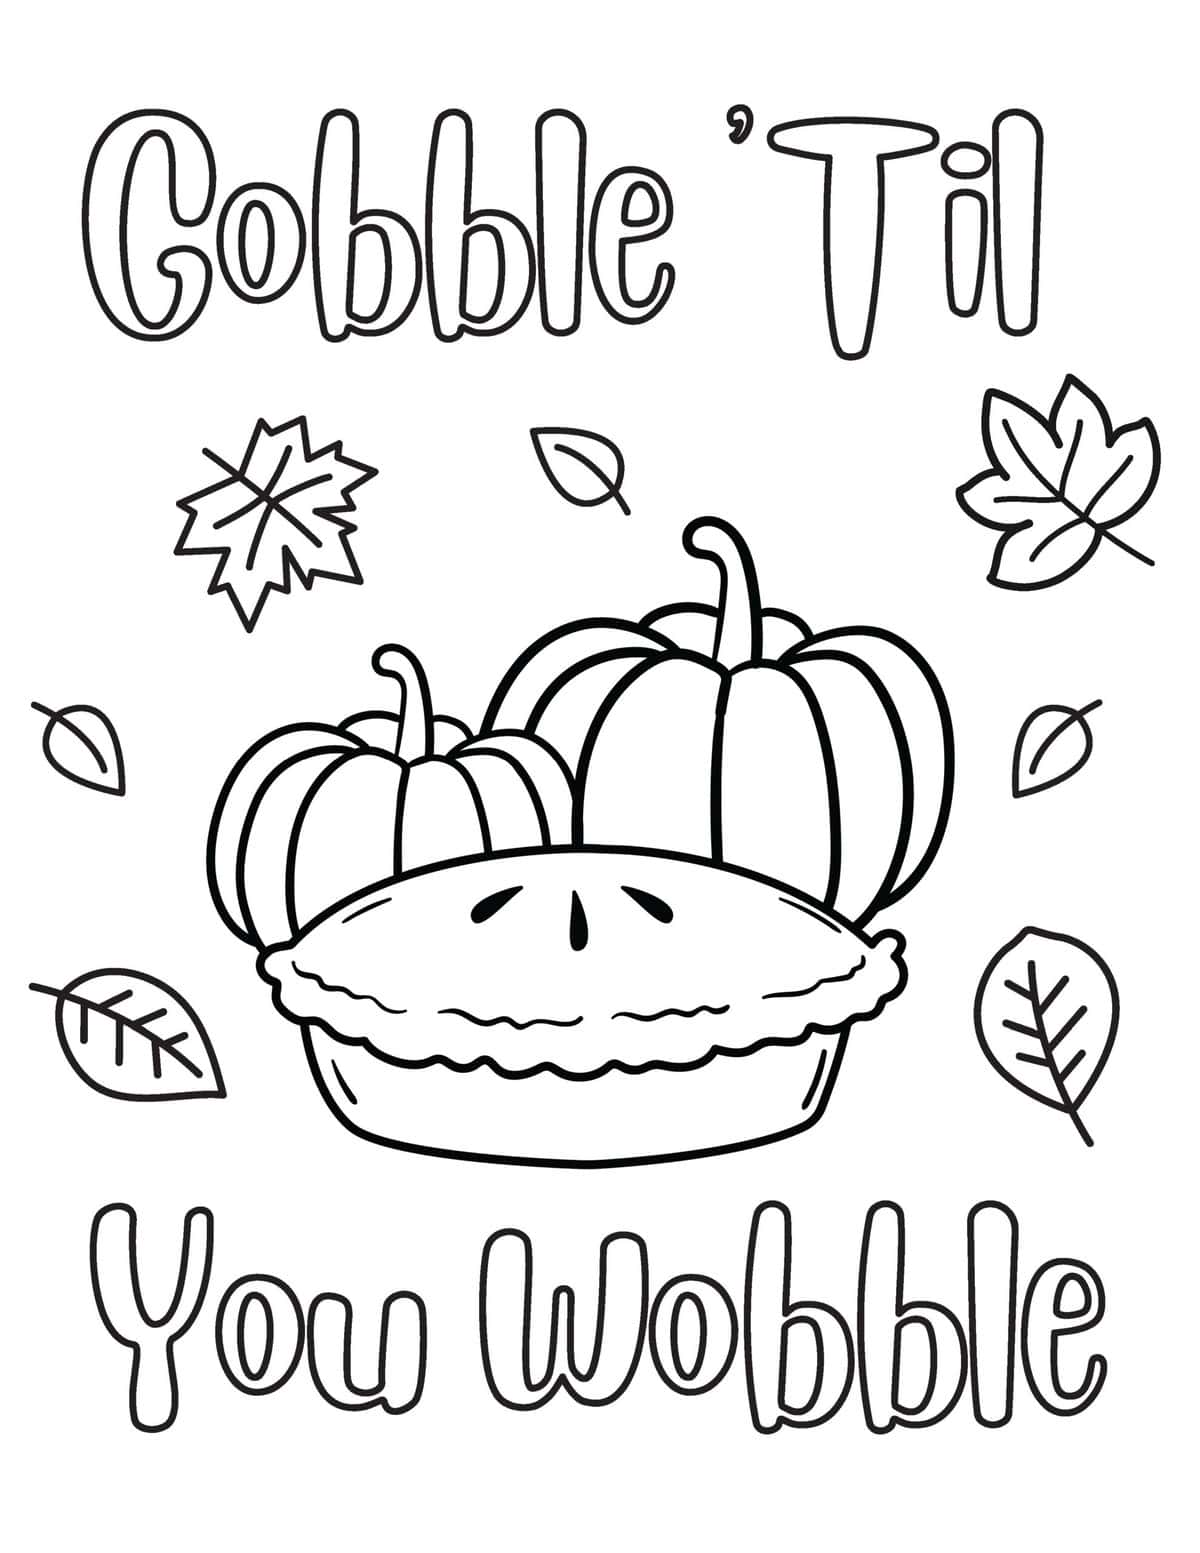 gobble until you wobble pumpkin pie coloring page